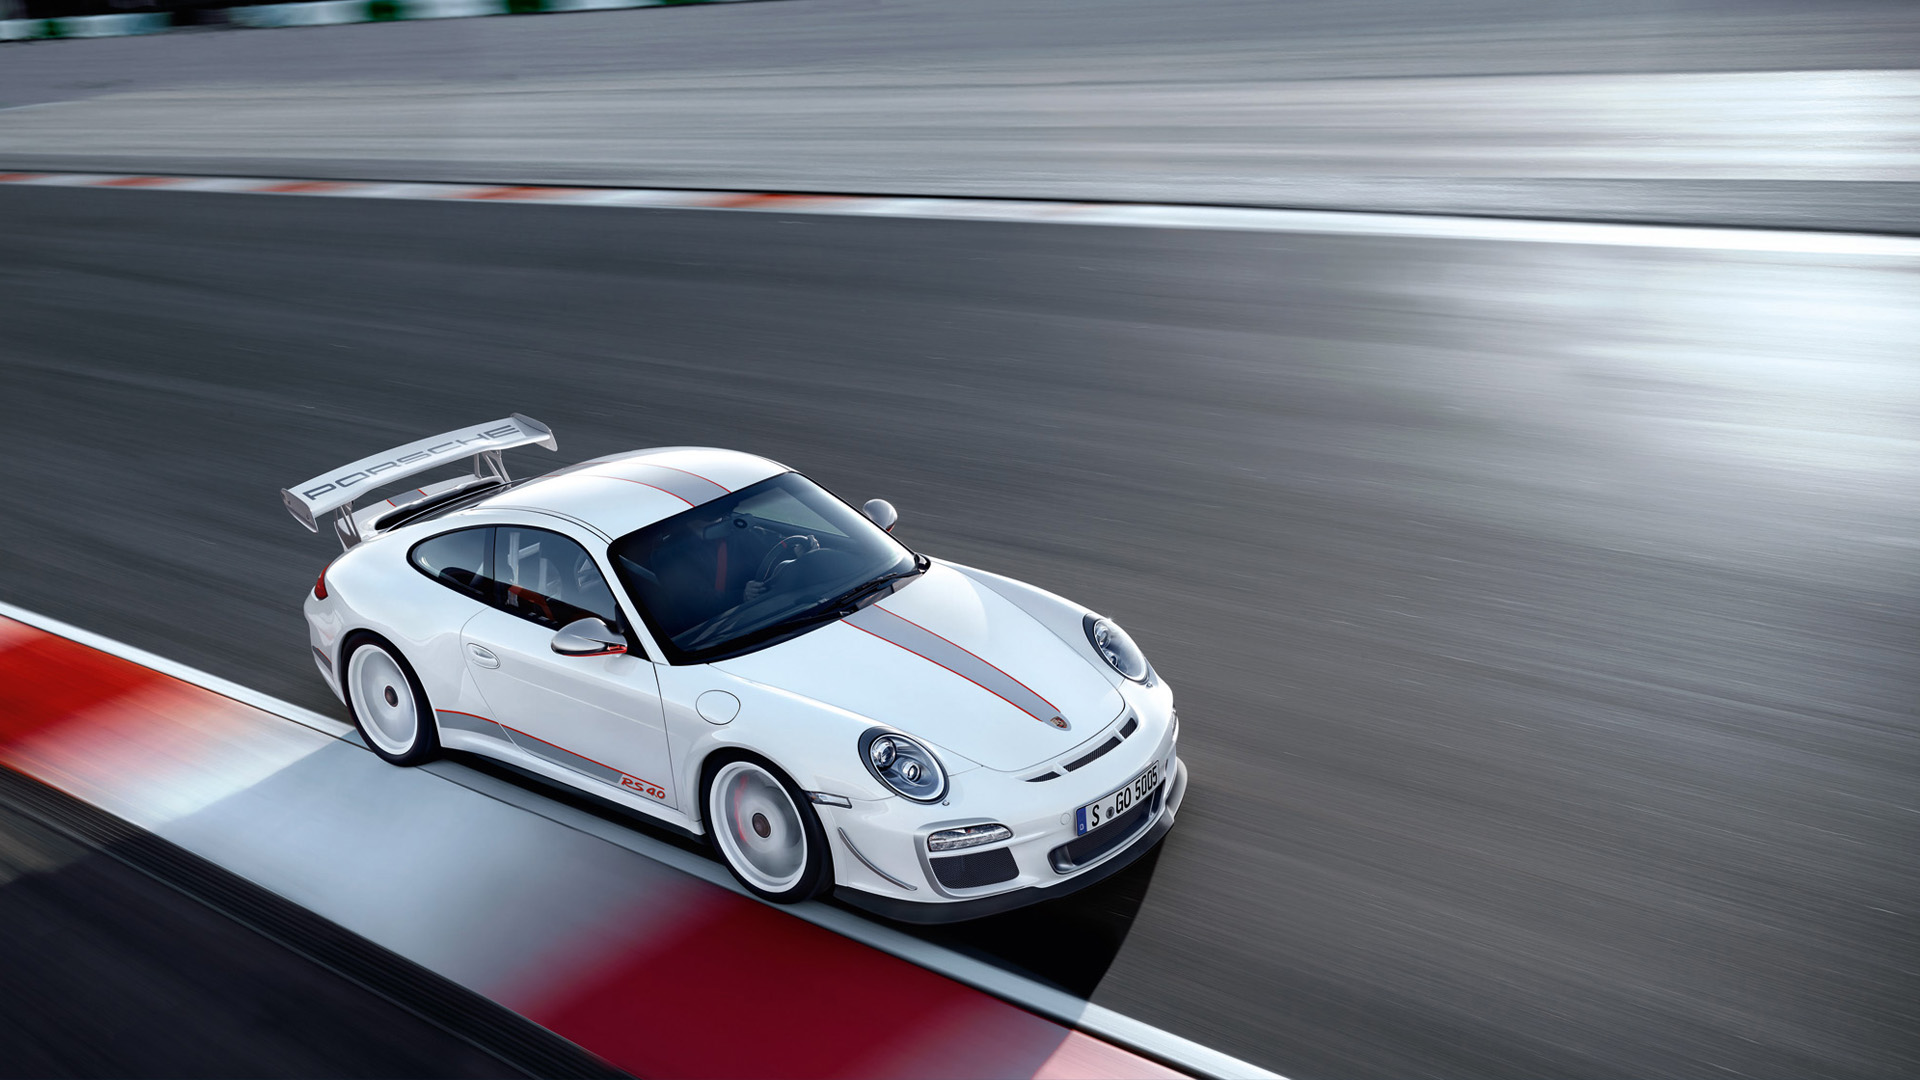  2011 Porsche 911 GT3 RS 4.0 Wallpaper.